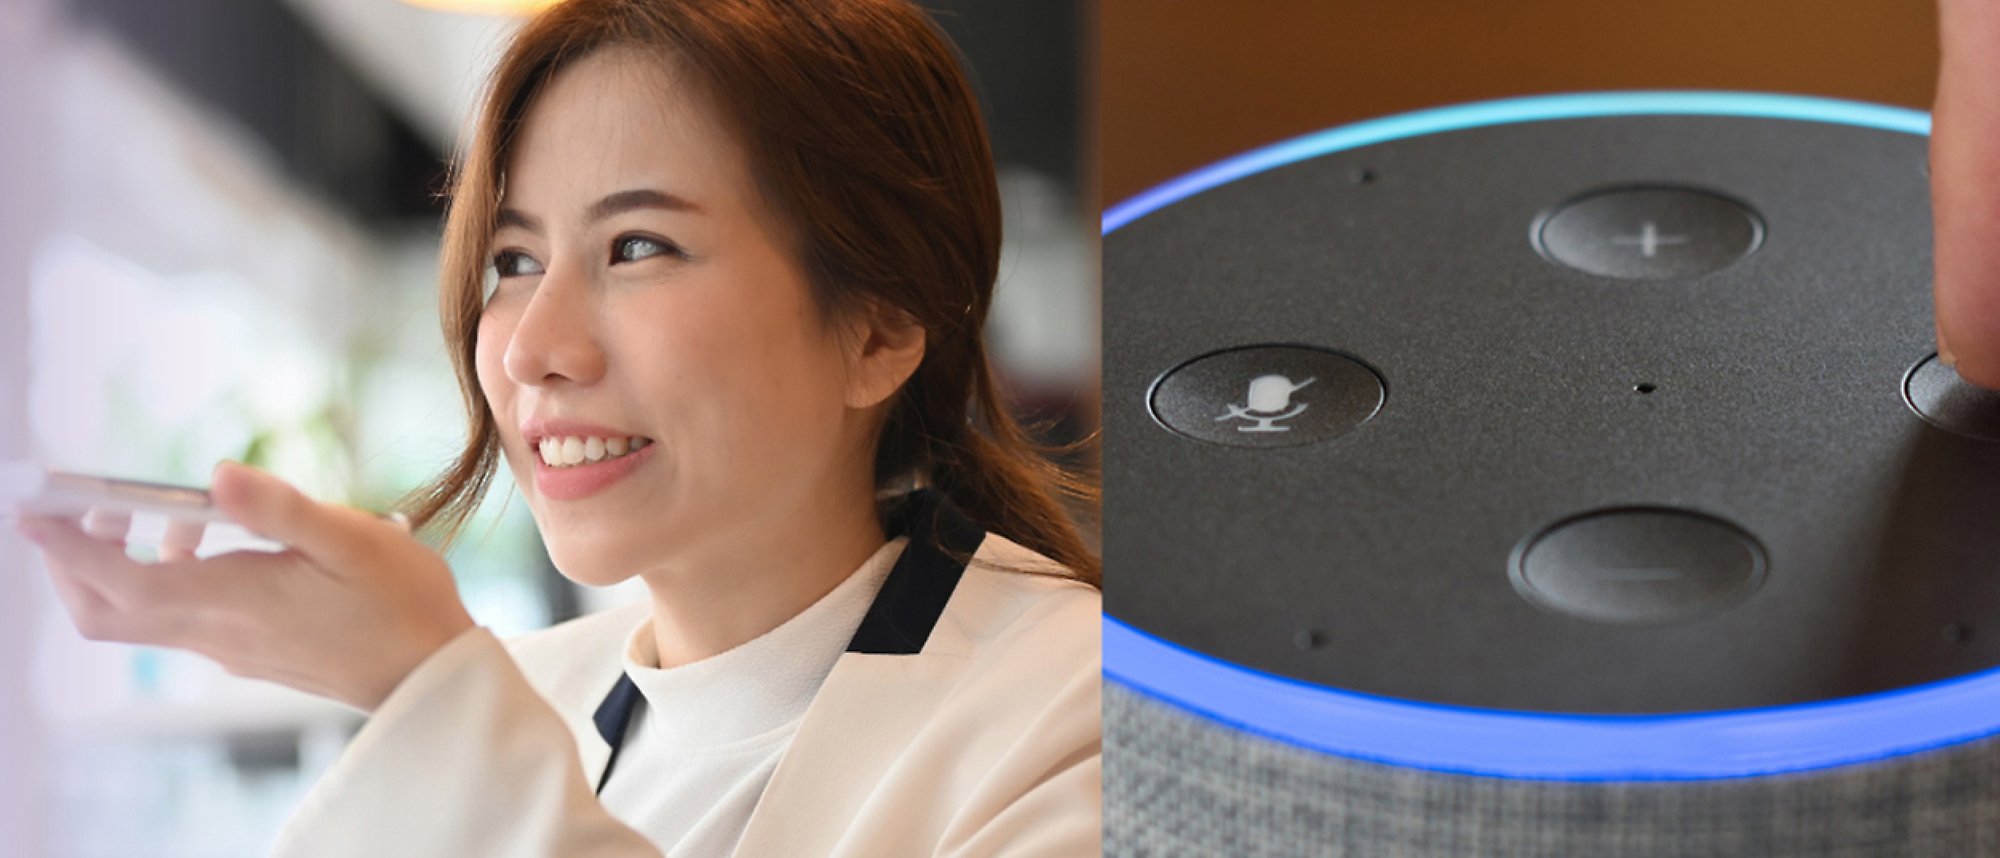 Een vrouw die belt met een telefoon en een afbeelding van Amazon Alexa met blauwe lampjes en de geluidsbediening